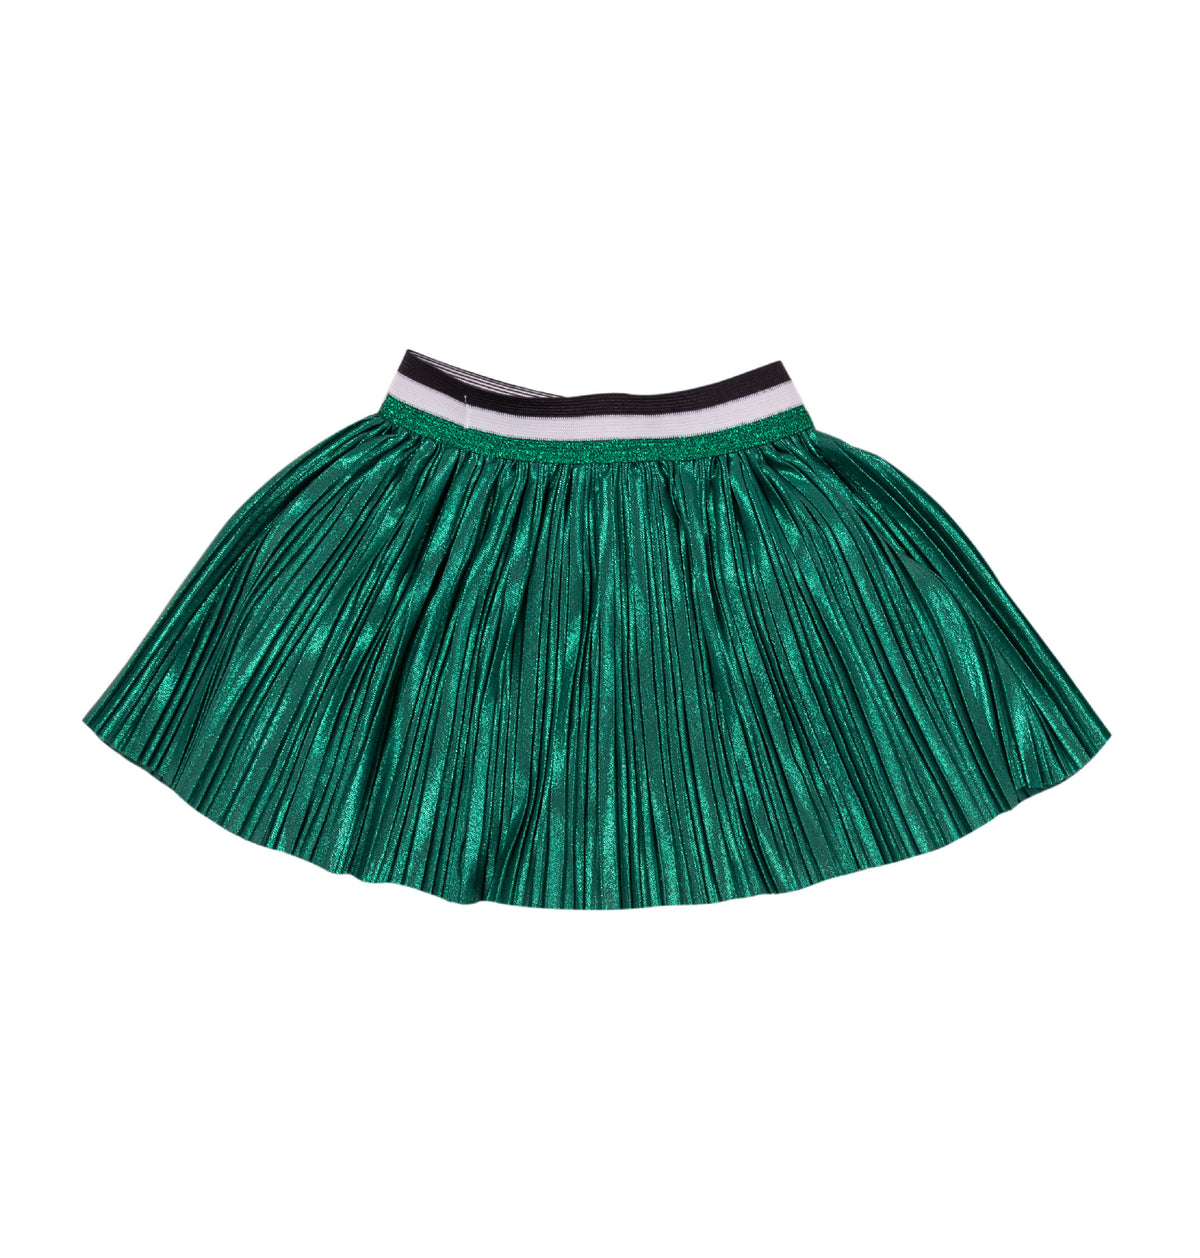 EMC Metallized Pleated Fabric Skirt